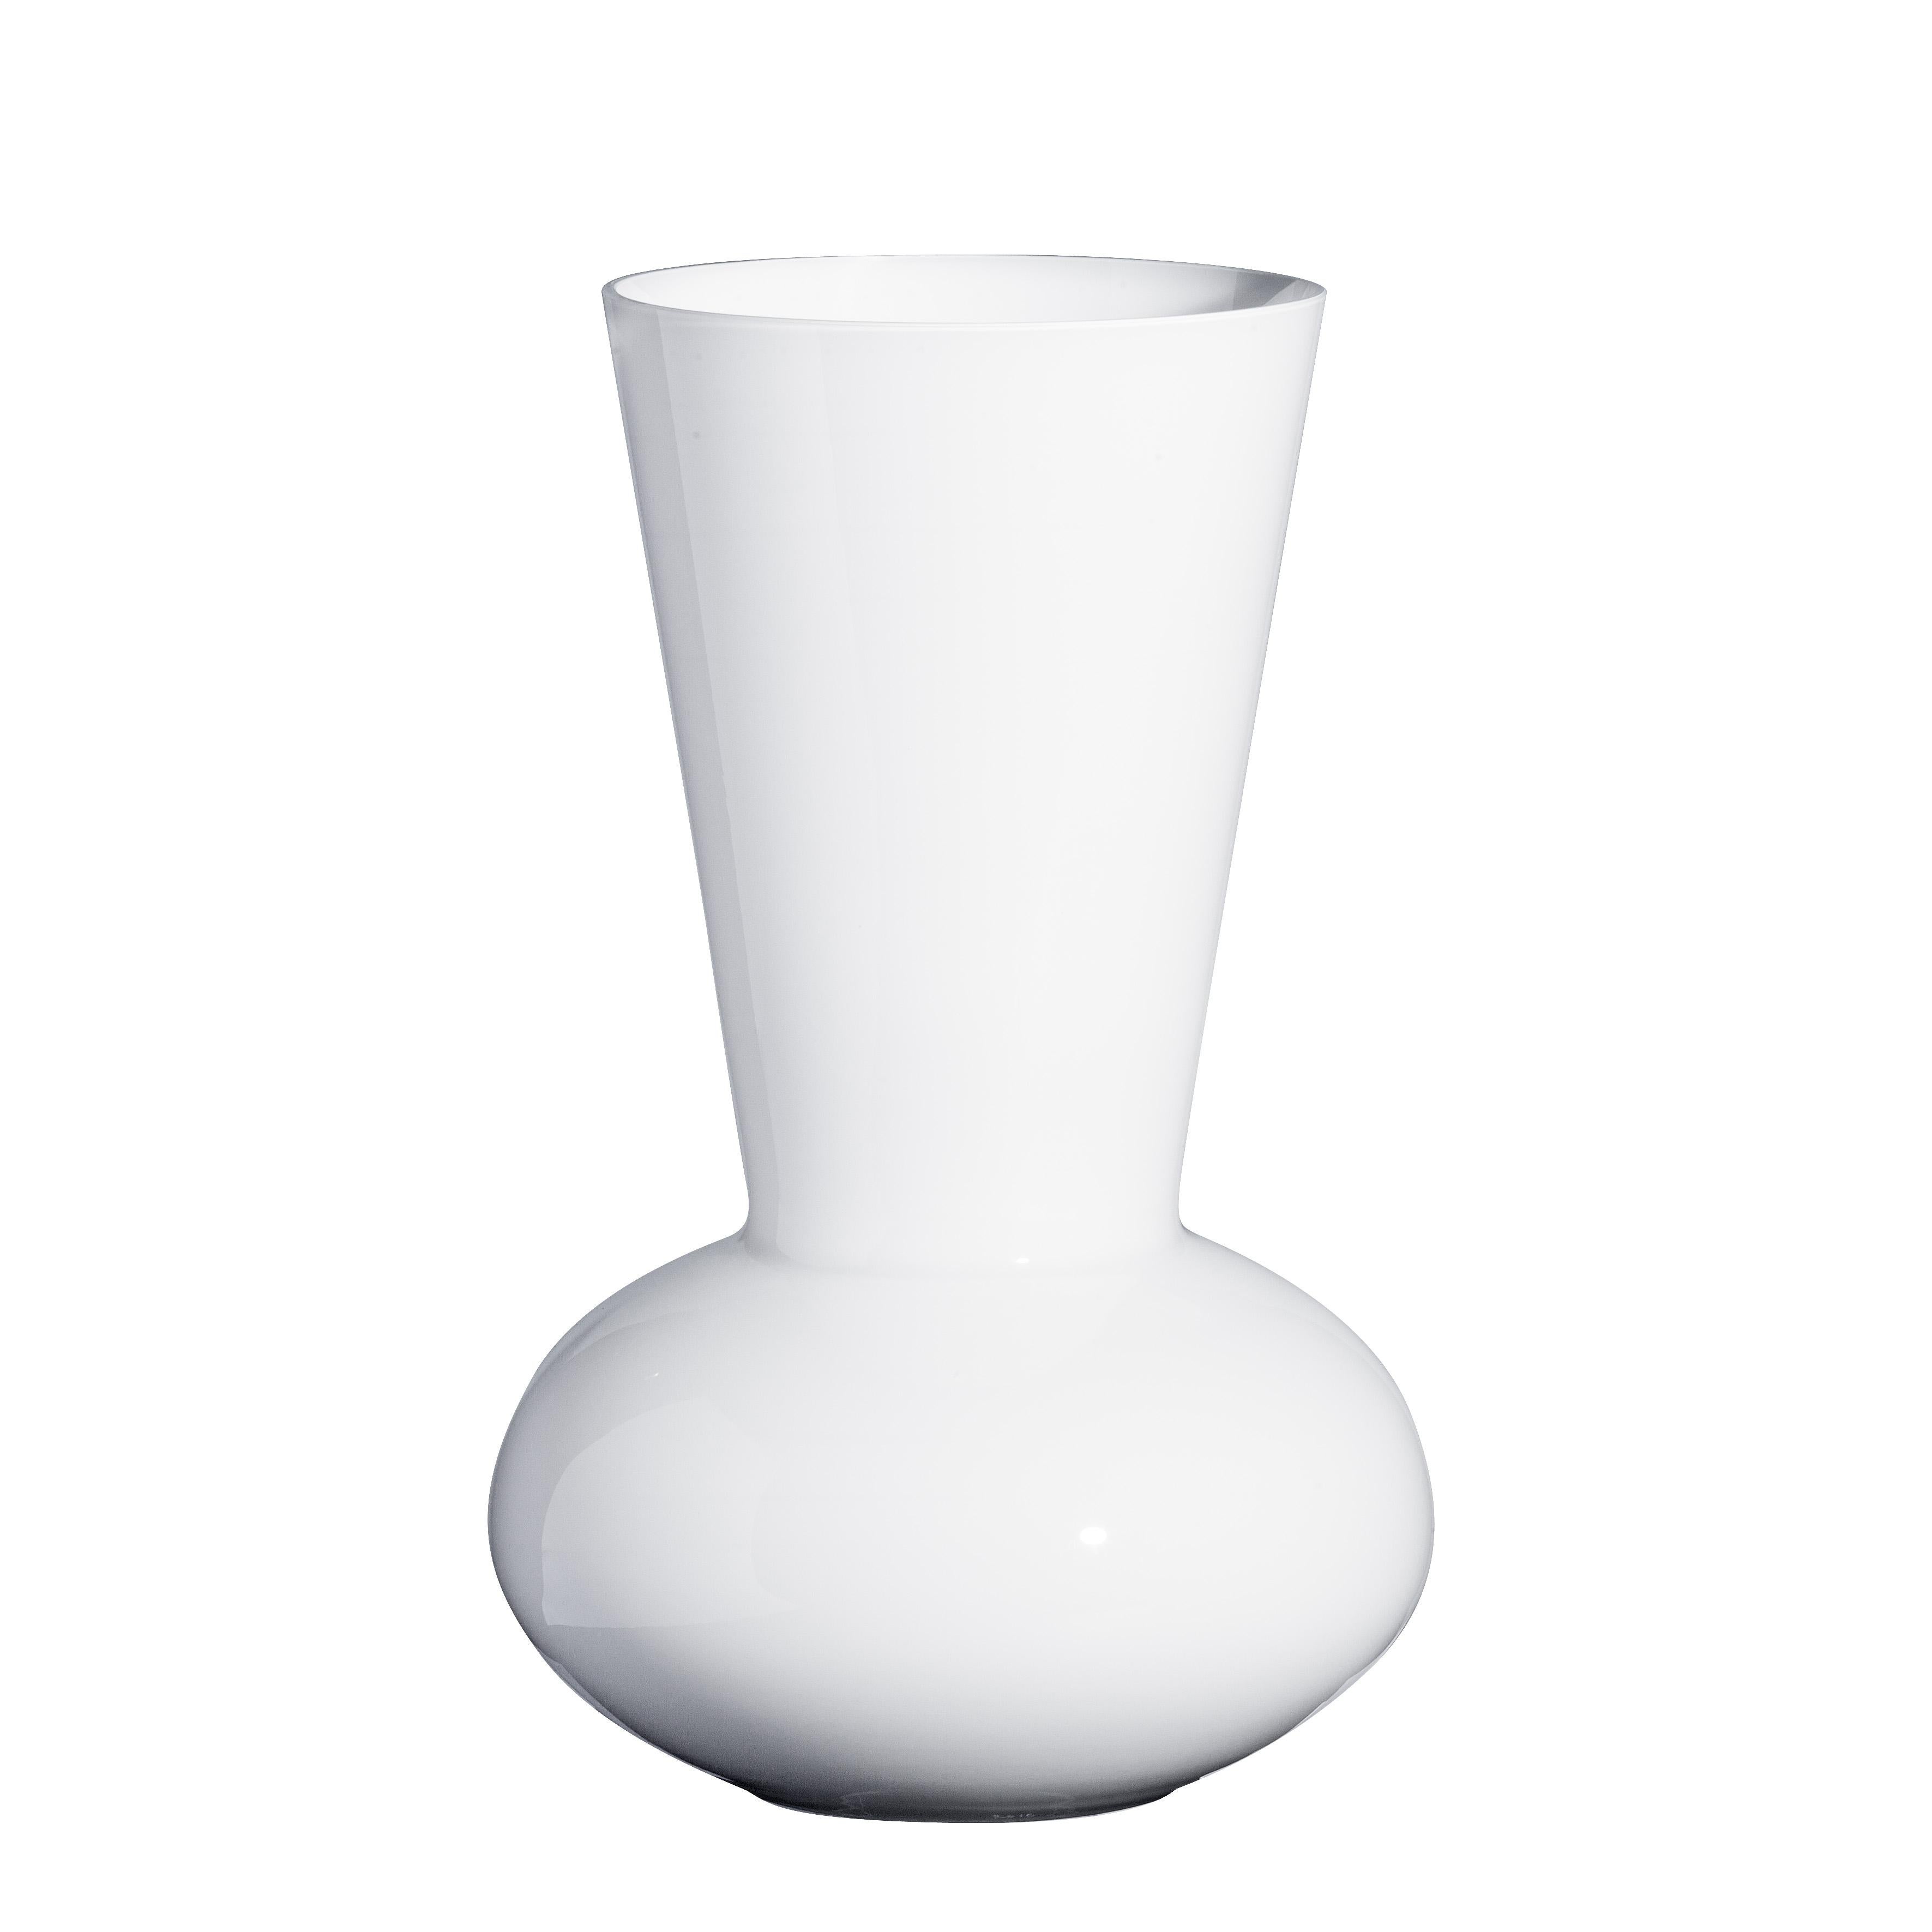 Troncosfera-Vase in Weiß von Carlo Moretti